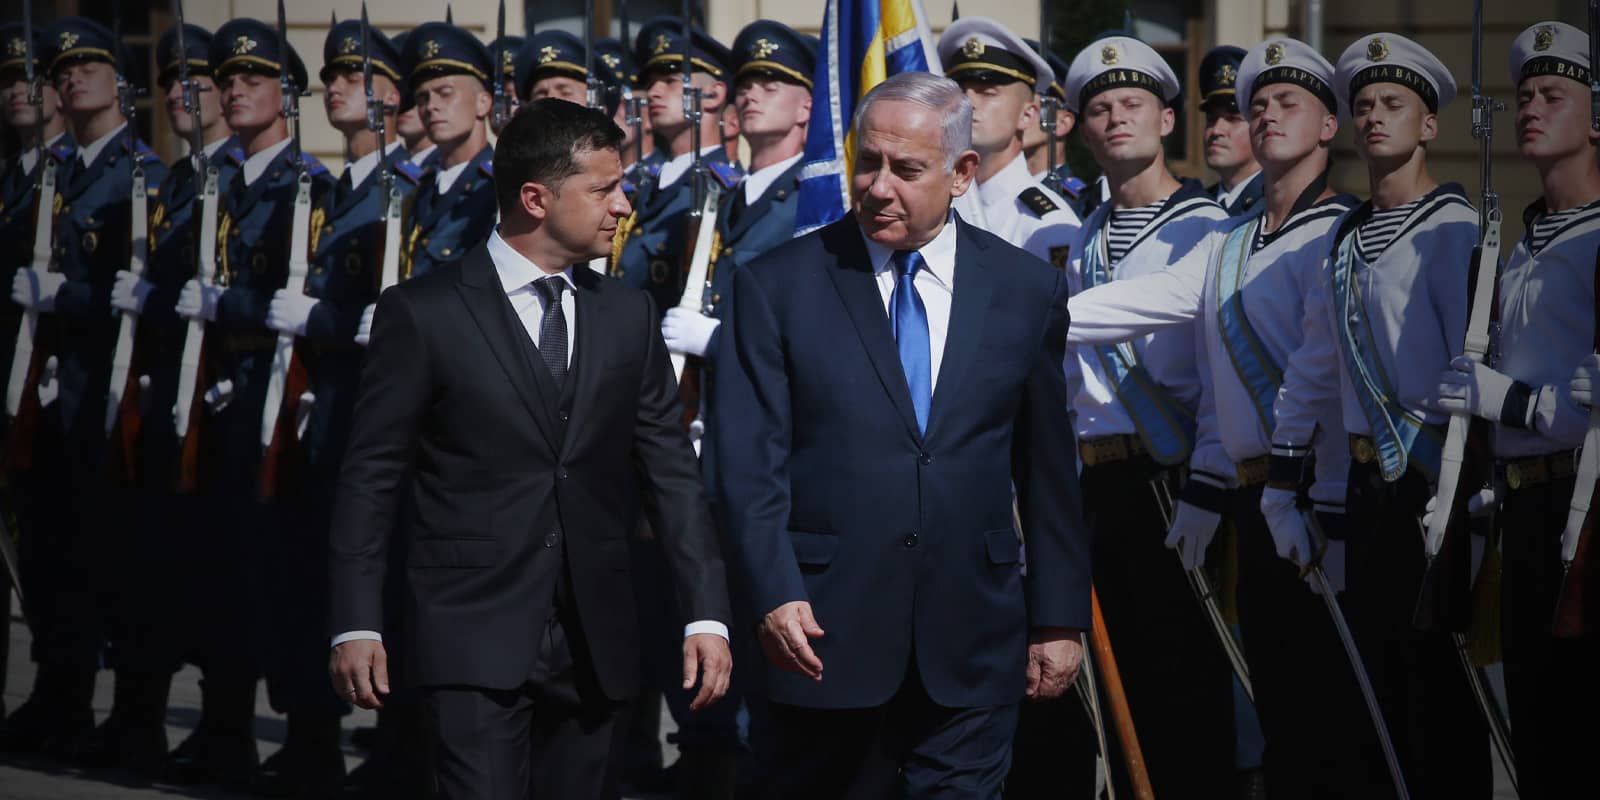 Ukrainian President Volodymyr Zelensky(L) and Israeli Prime Minister Benjamin Netanyahu, 2019